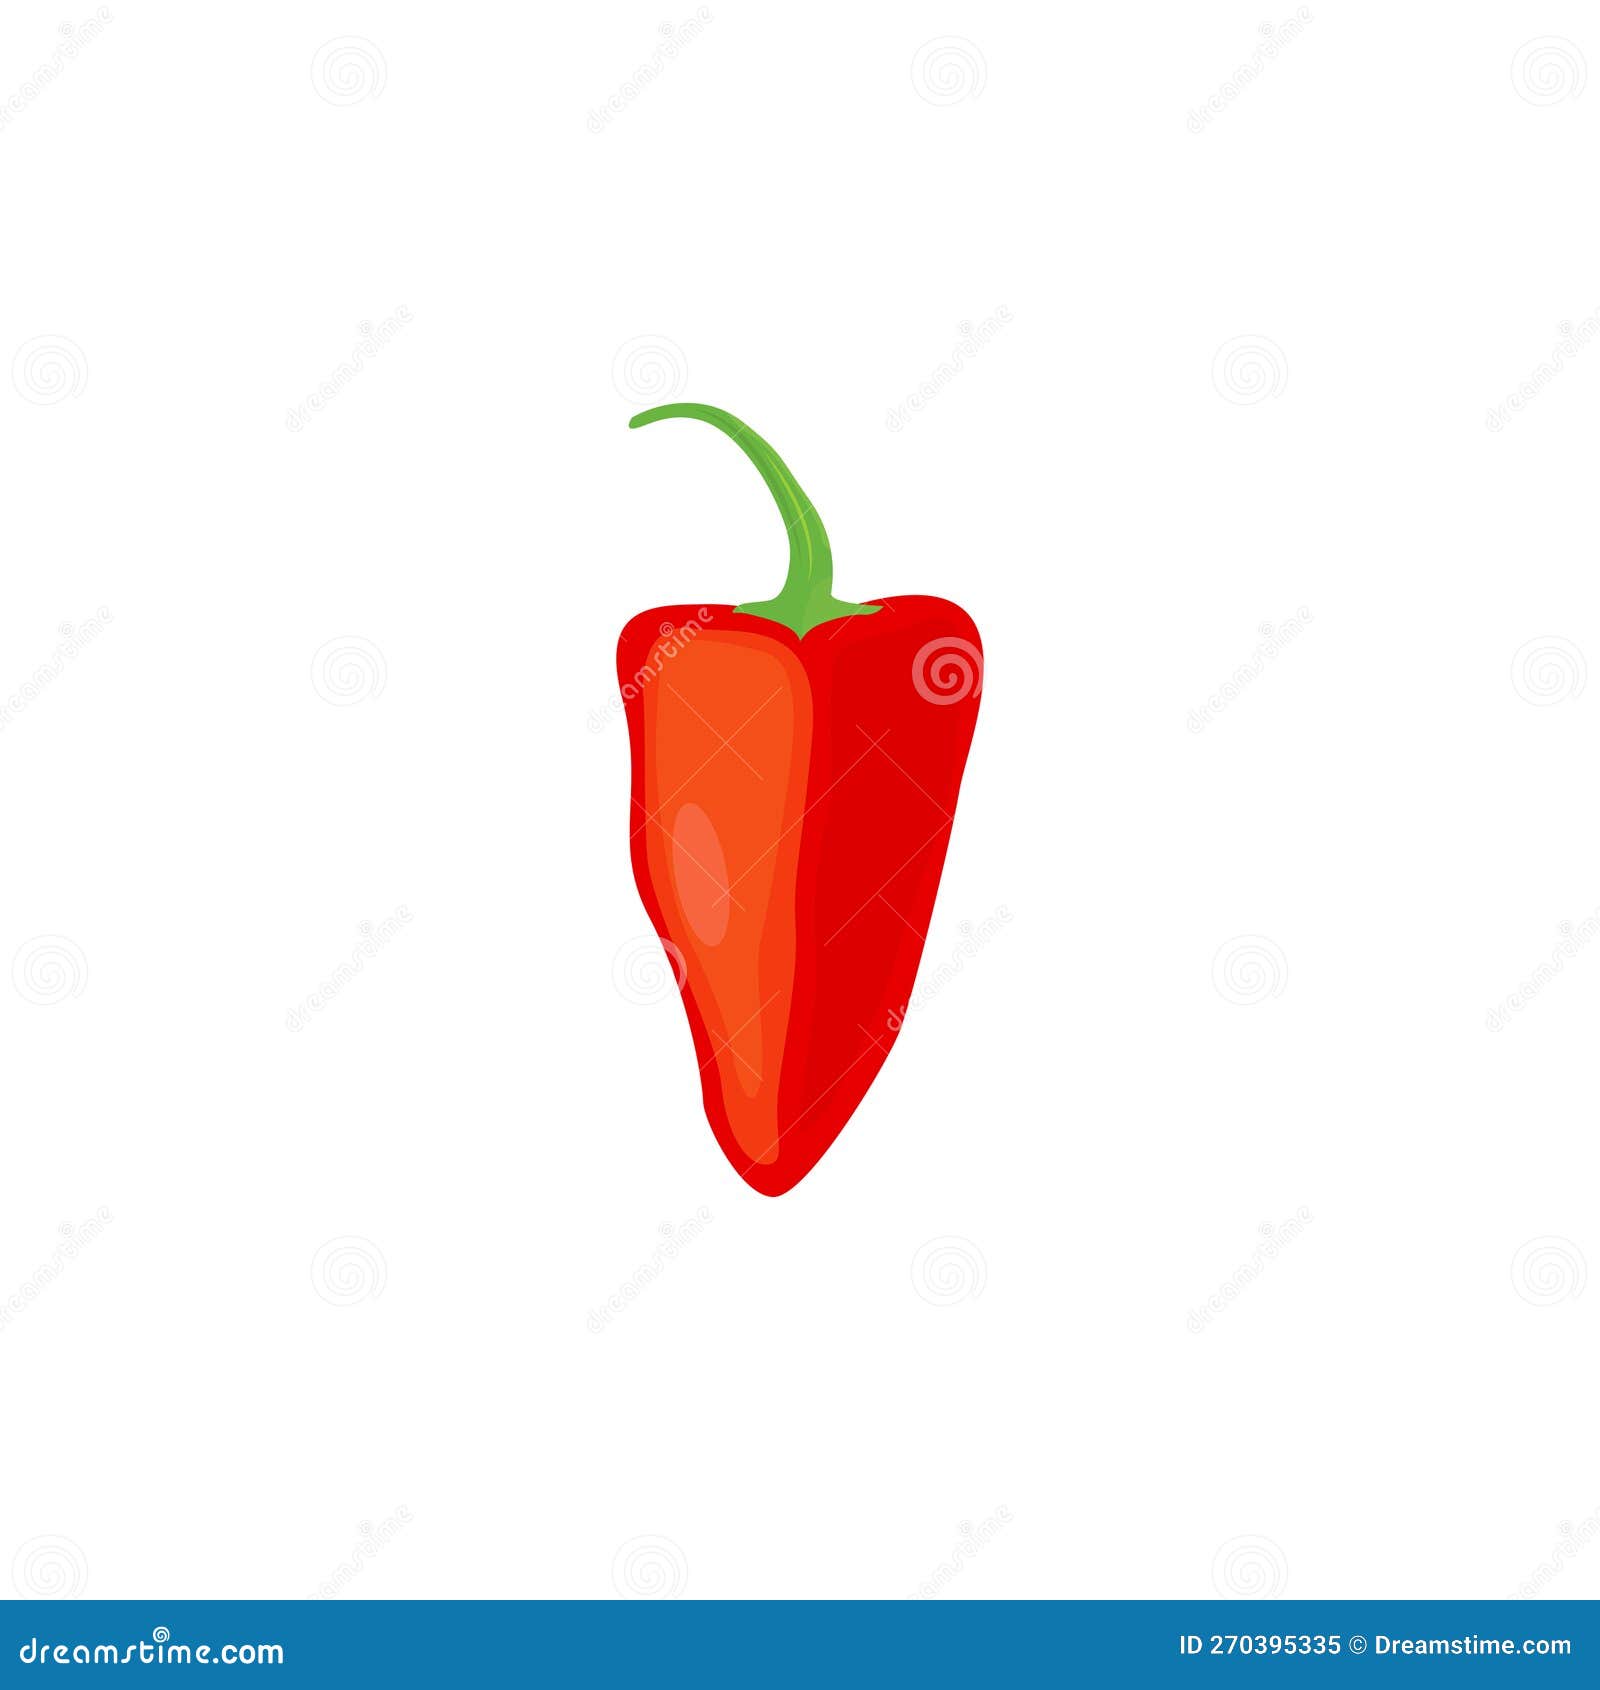 piquillo pepper or chili pepper. pimiento pepper.